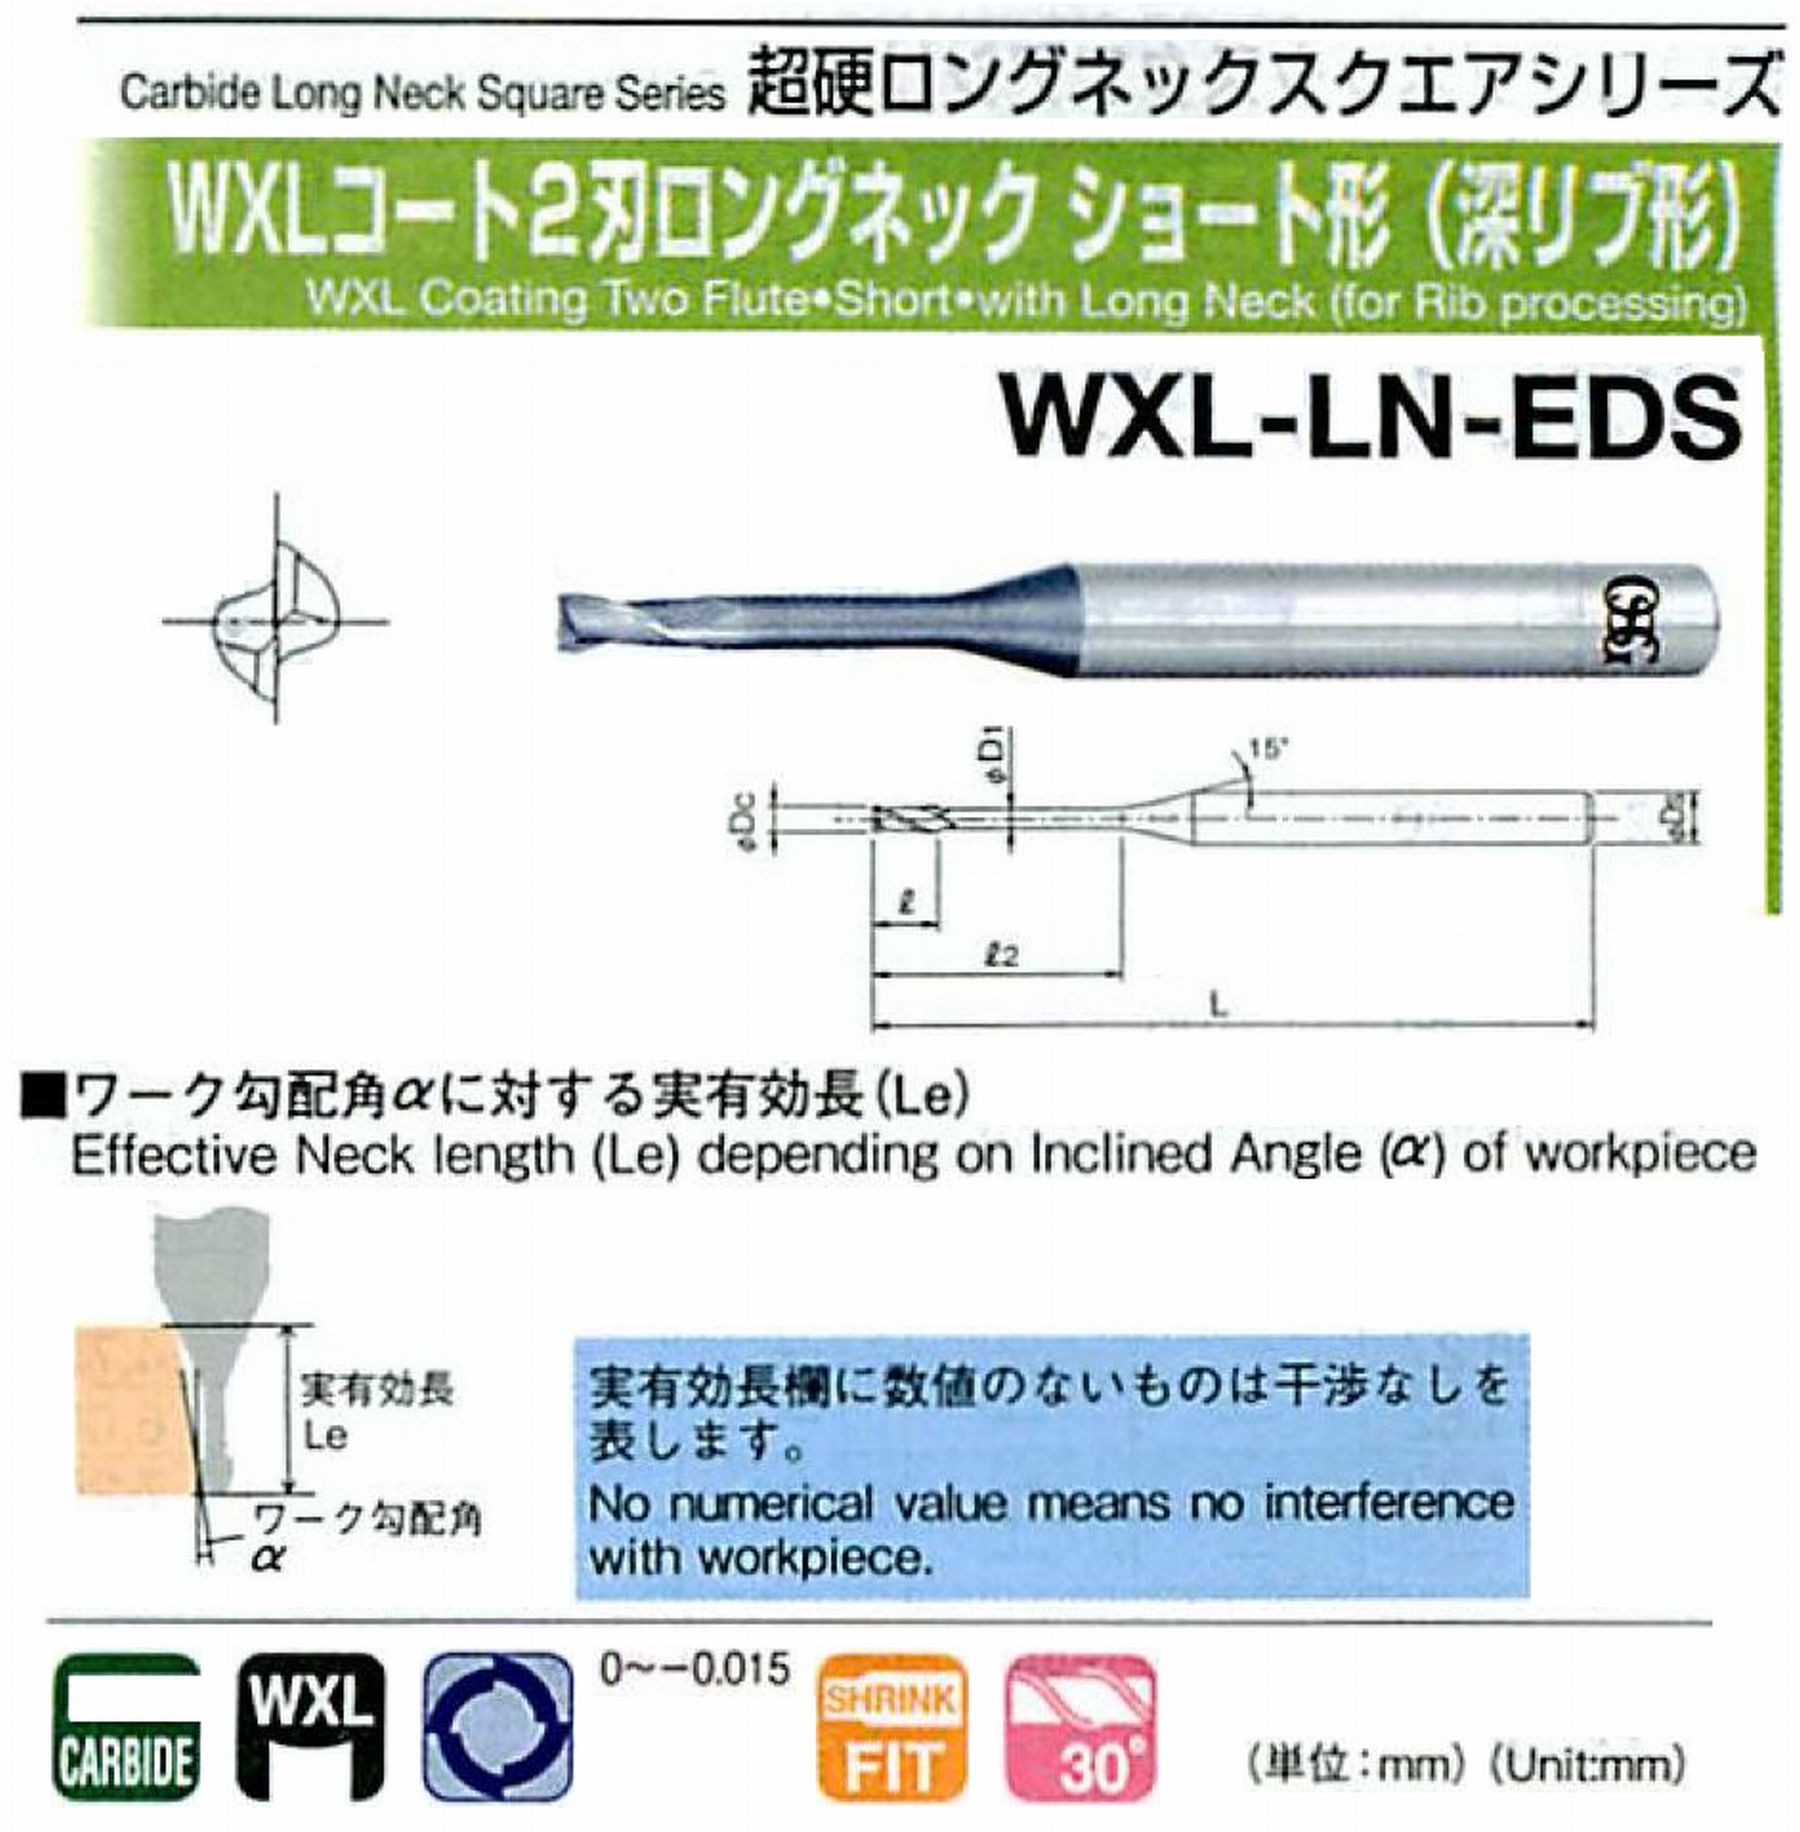 オーエスジー/OSG WXLコート2刃 ロングネックショート形(深リブ形) WXL-LN-EDS 外径×首下長0.2×4 全長45 刃長0.3 シャンク径4mm 首径0.18